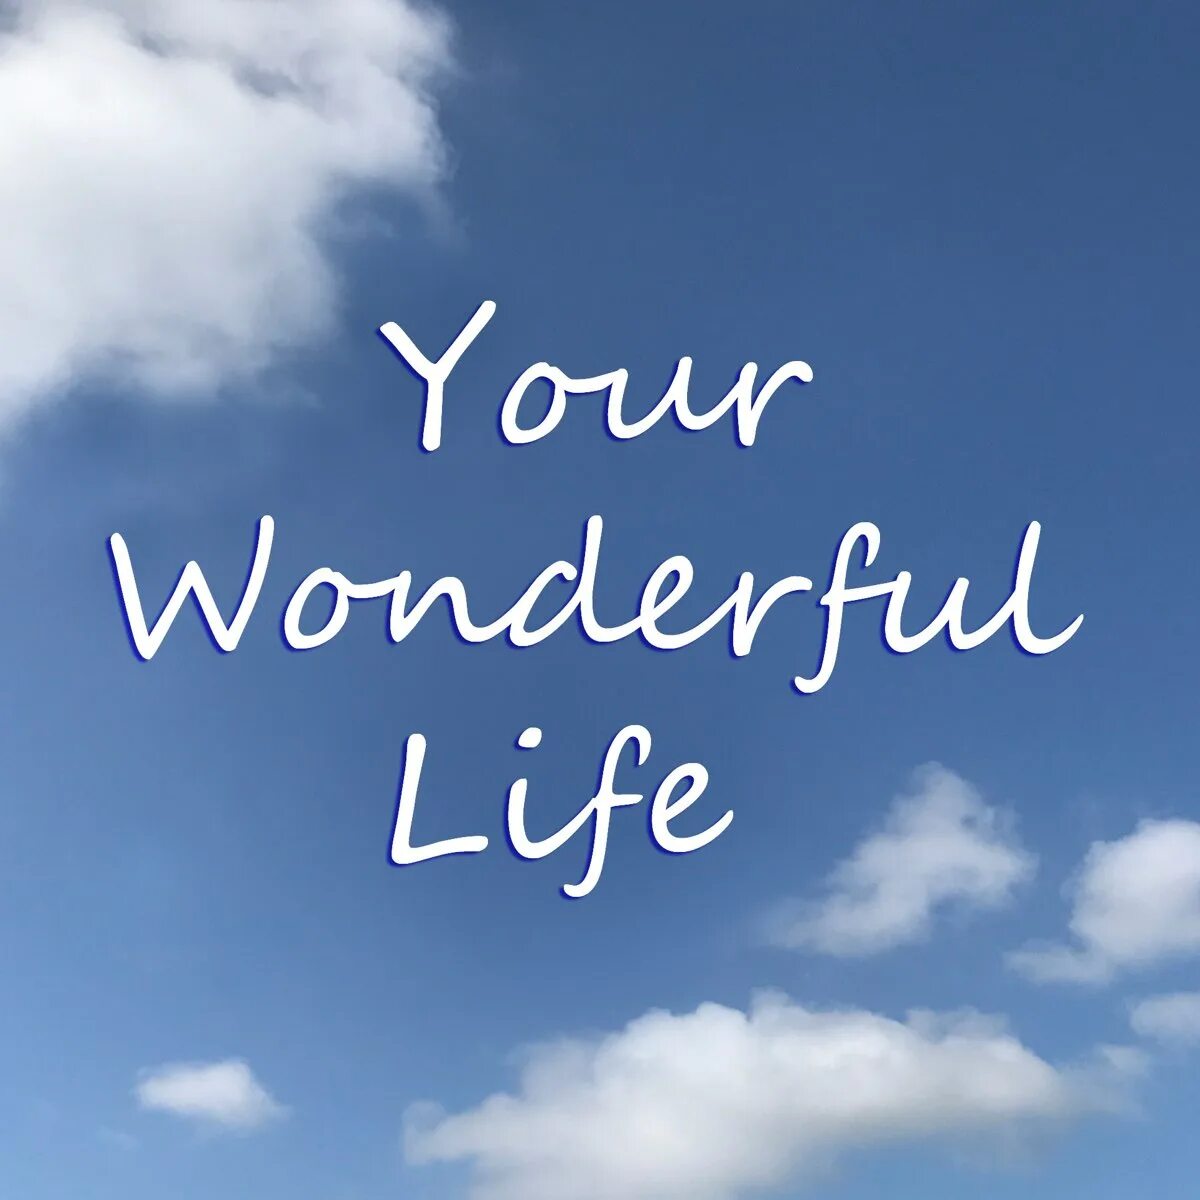 Включи wonderful life. Wonderful Life. Wonderful Life картинки. Life is wonderful картинки. Wonderful картинка.